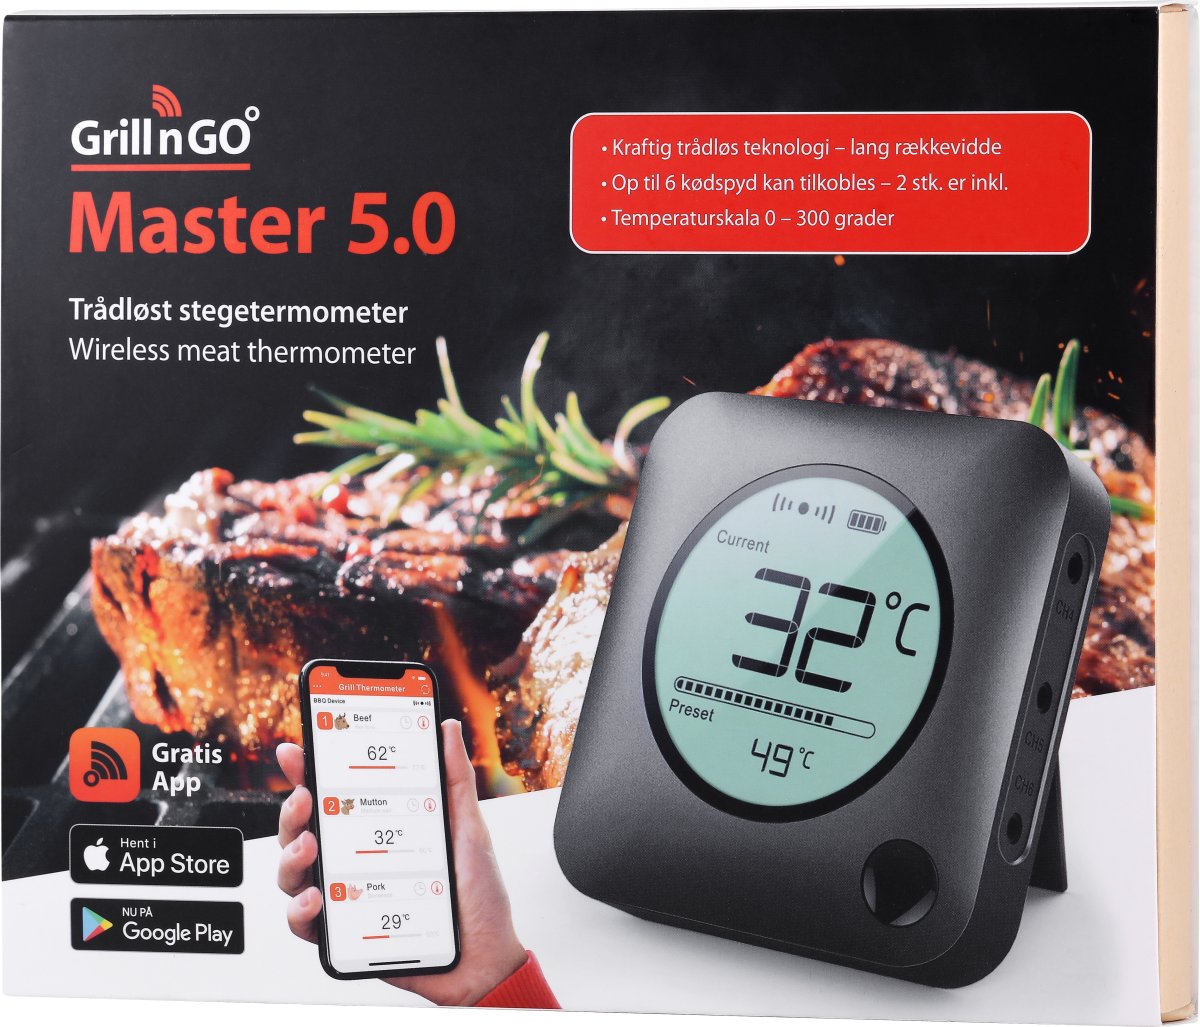 Grill'n'go Master 5.0 trådløst stegetermometer